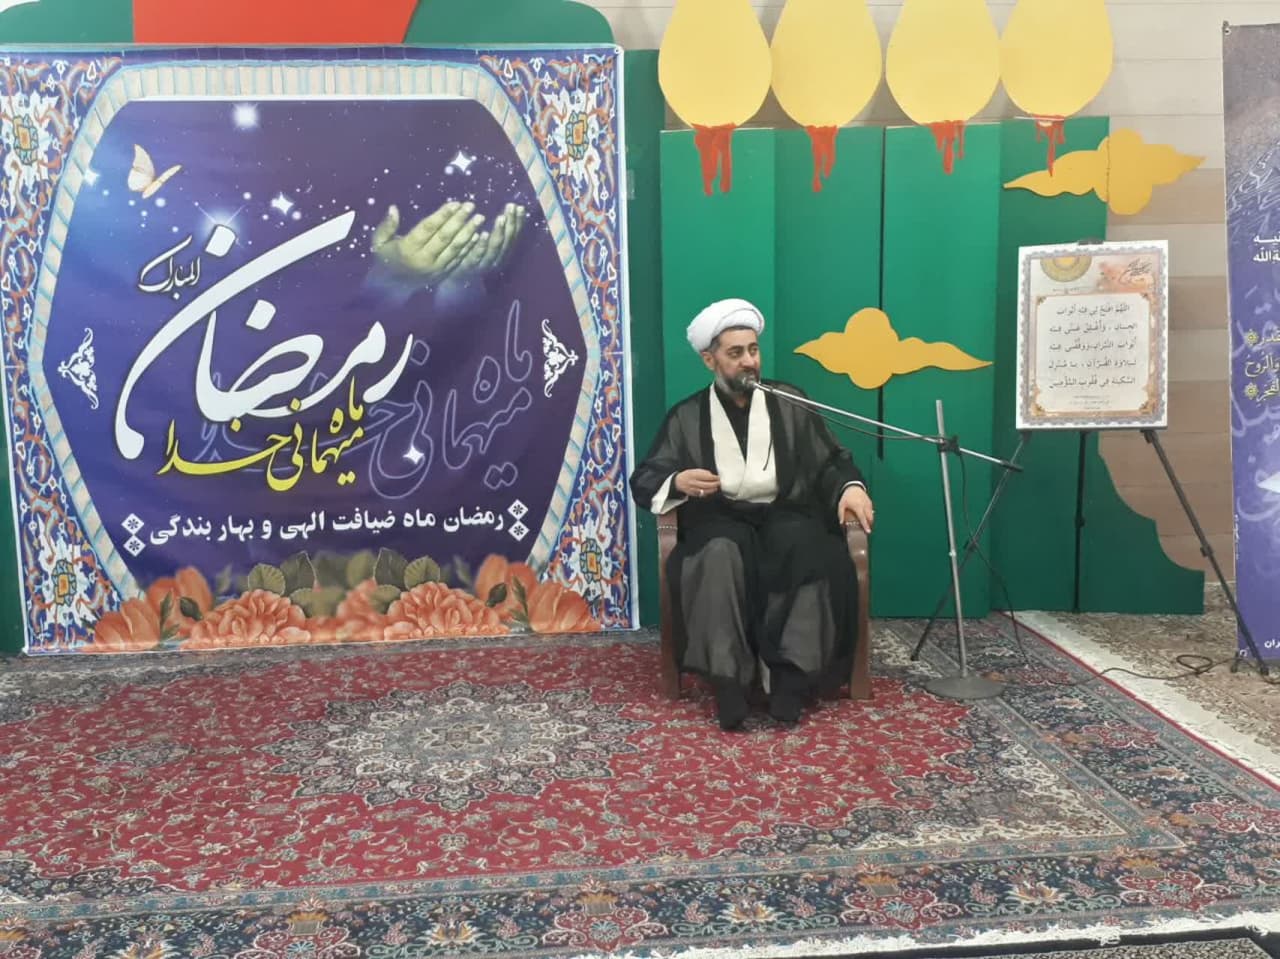 نشست نمازی در شرکت تراکتور سازی تبریز برگزار شد